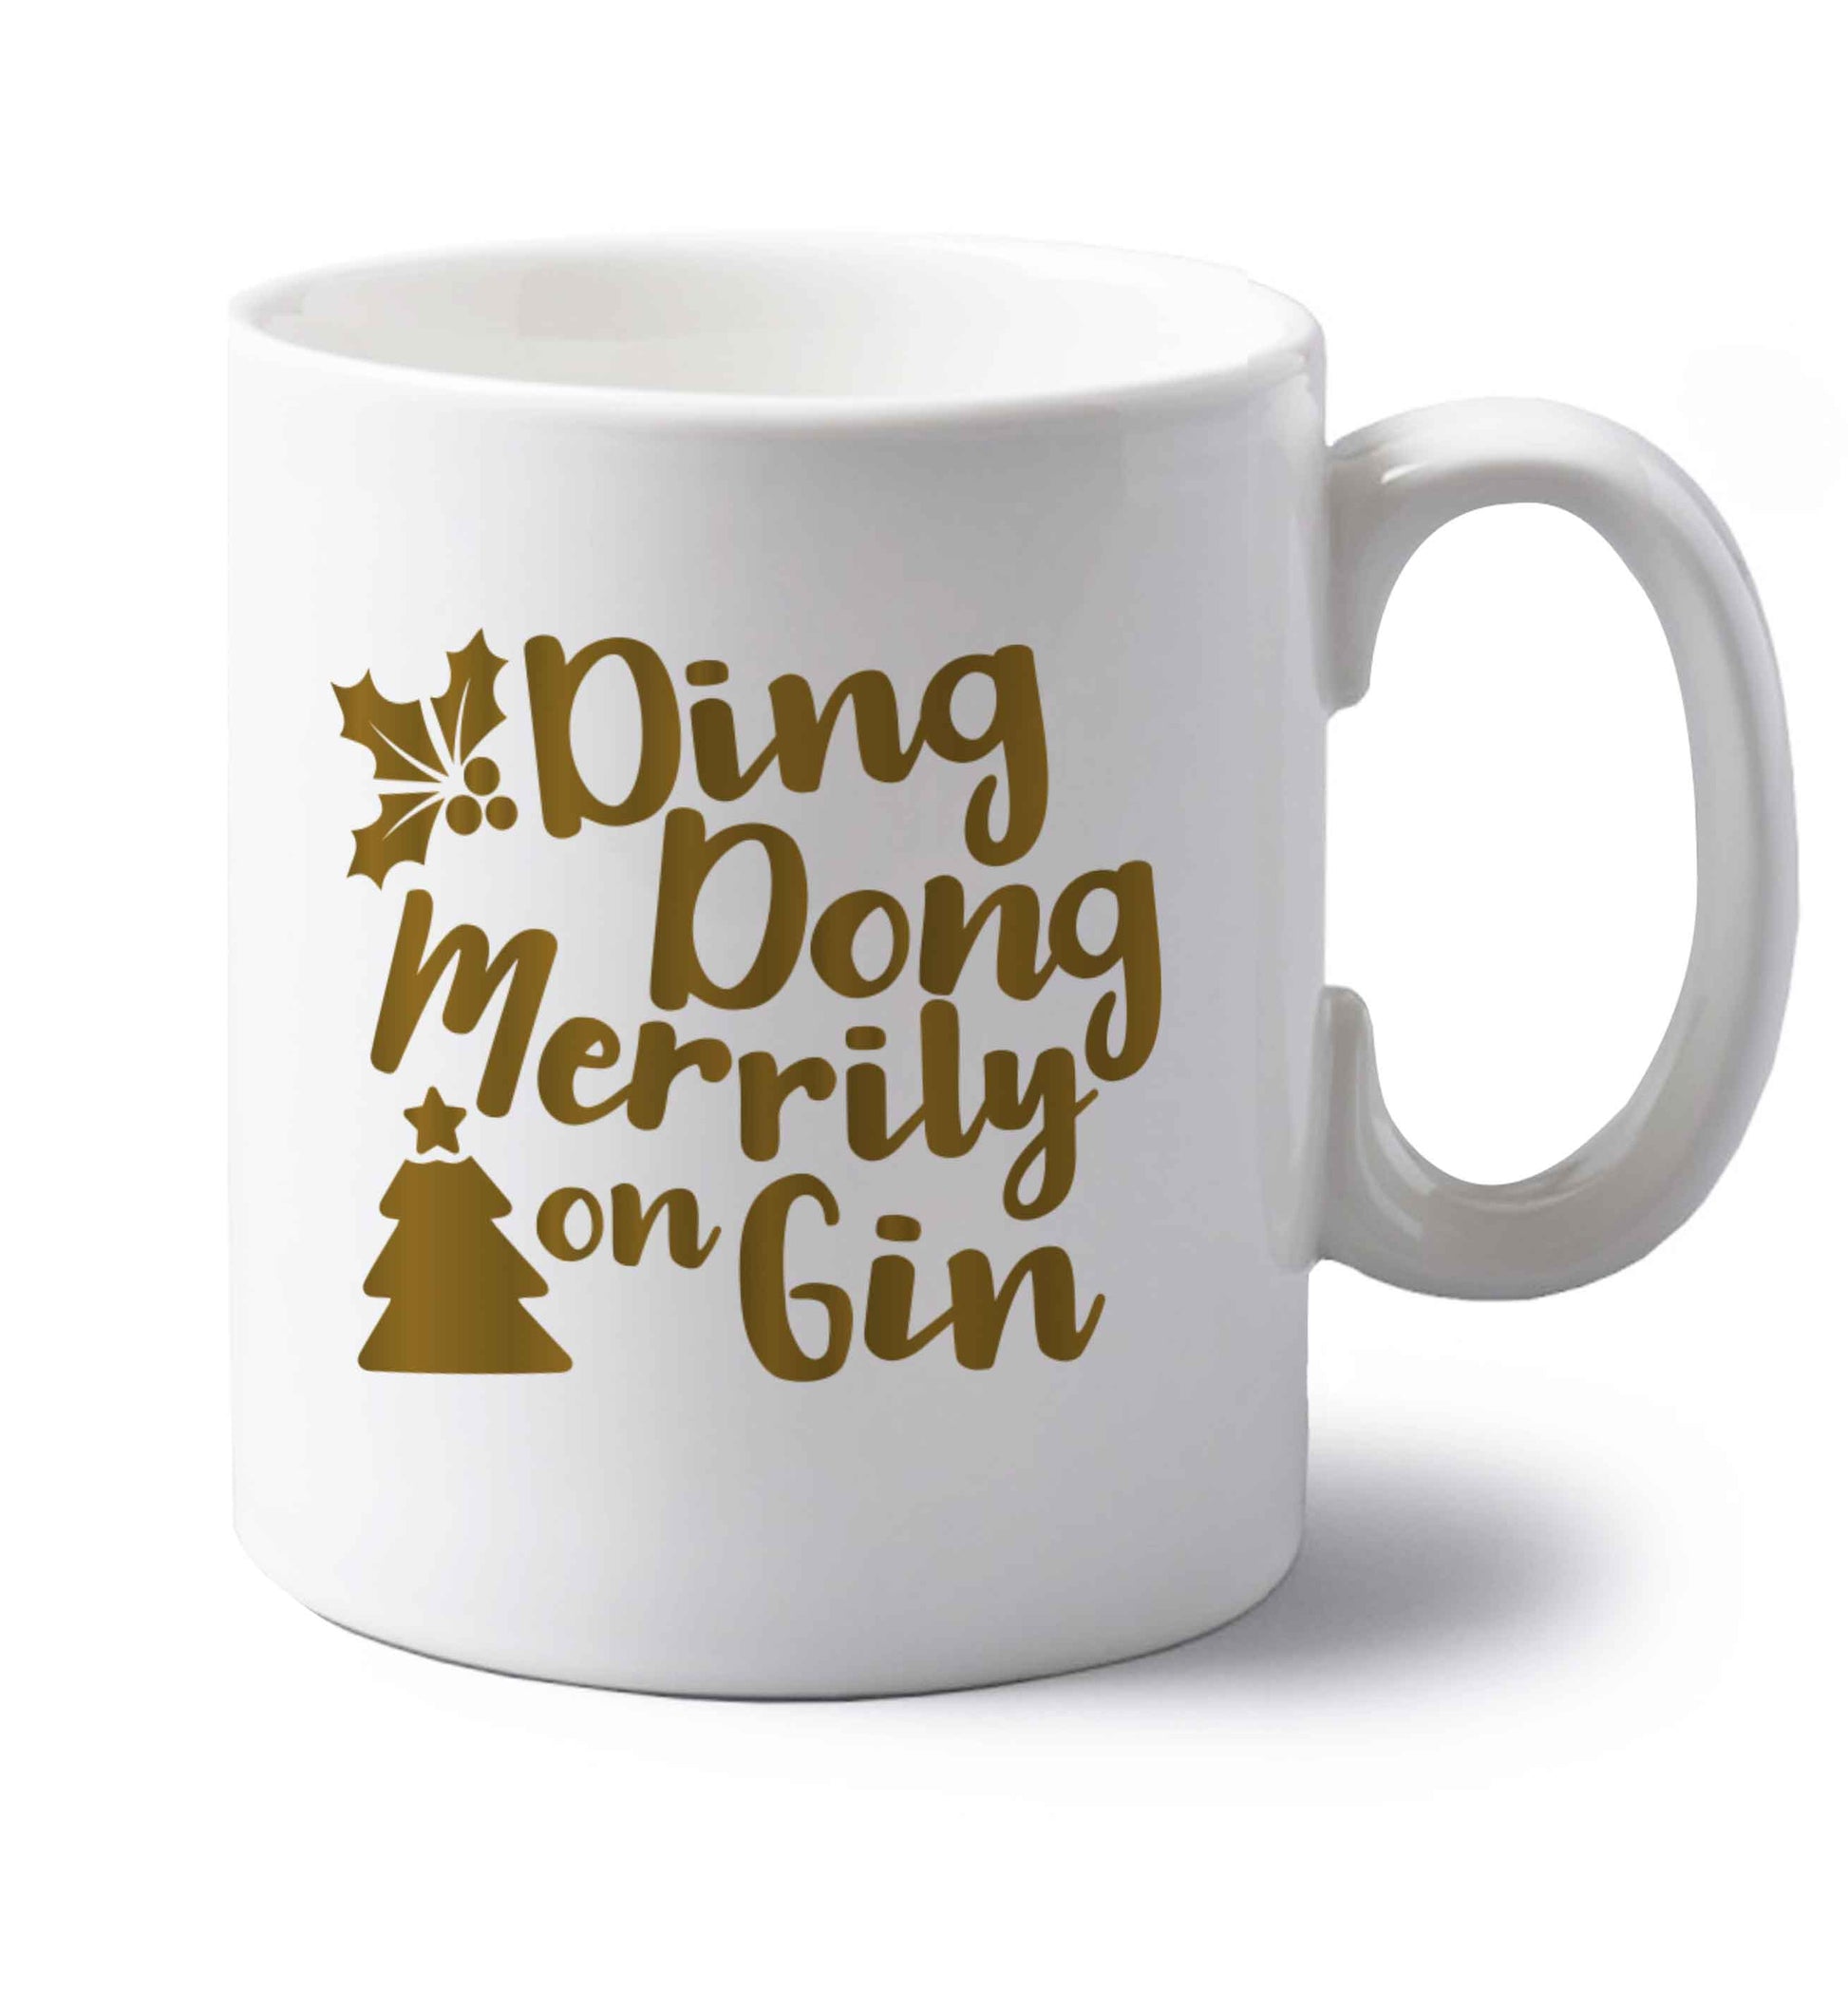 Ding dong merrily on gin left handed white ceramic mug 